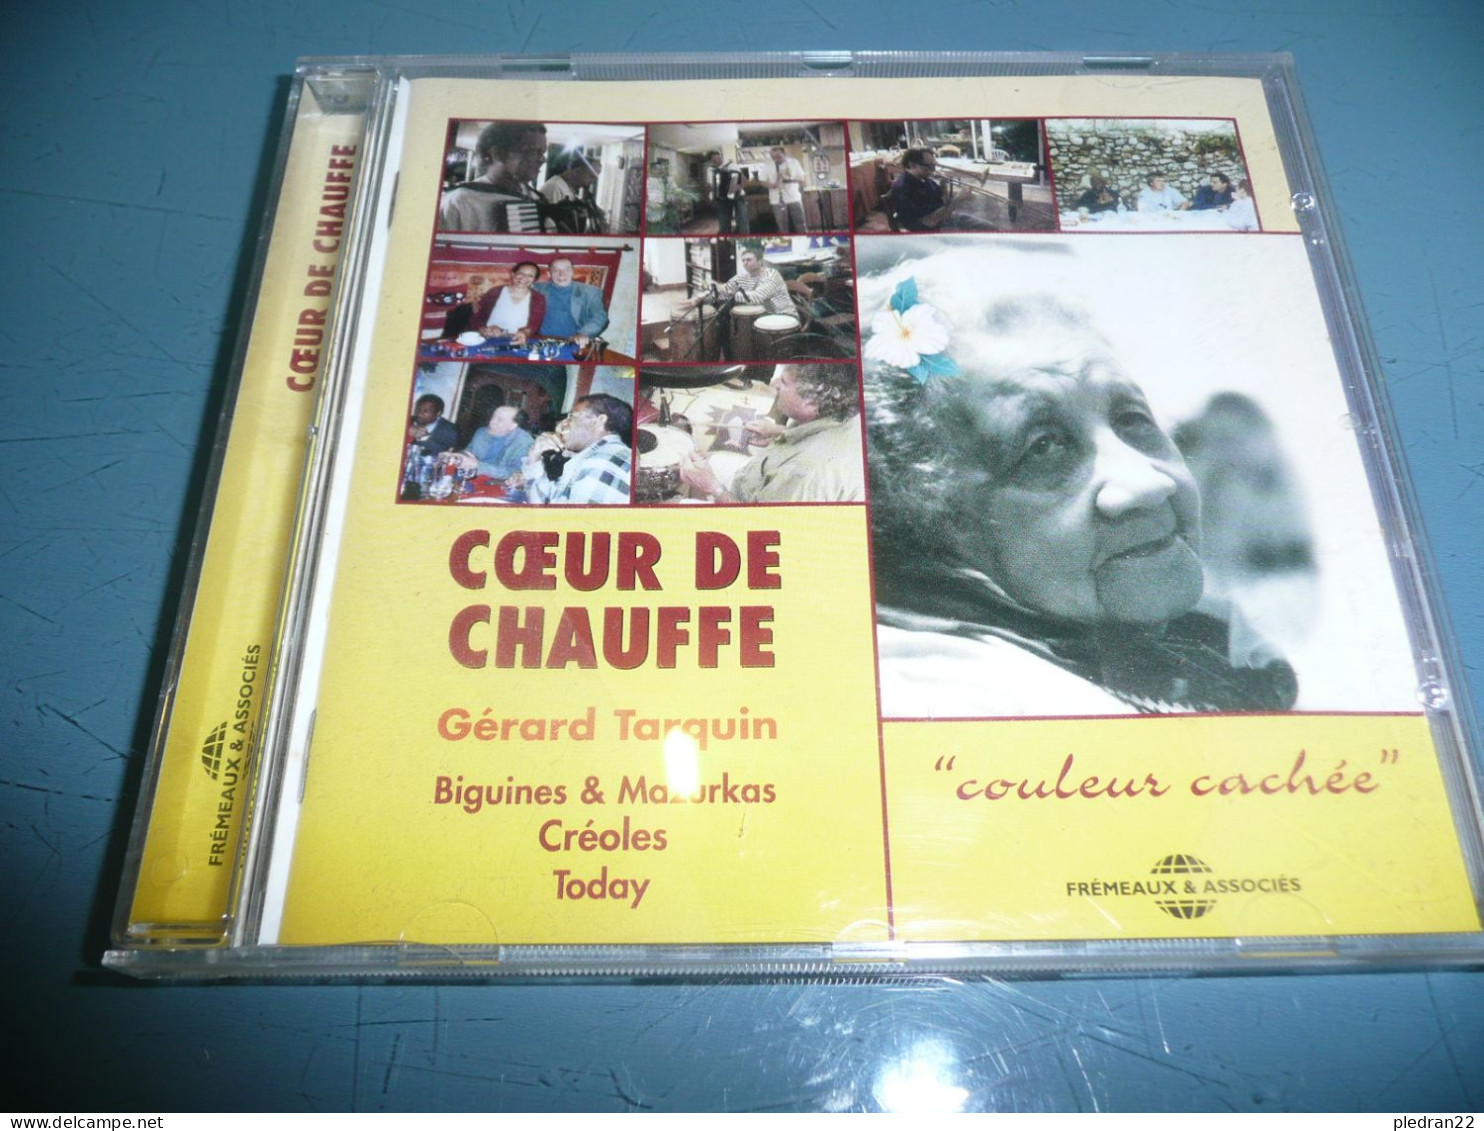 DISQUE CD GERARD TARQUIN COEUR DE CHAUFFE BIGUINES & MAZURKAS CREOLES TODAY COULEURS CACHEE 2005 - Musiques Du Monde